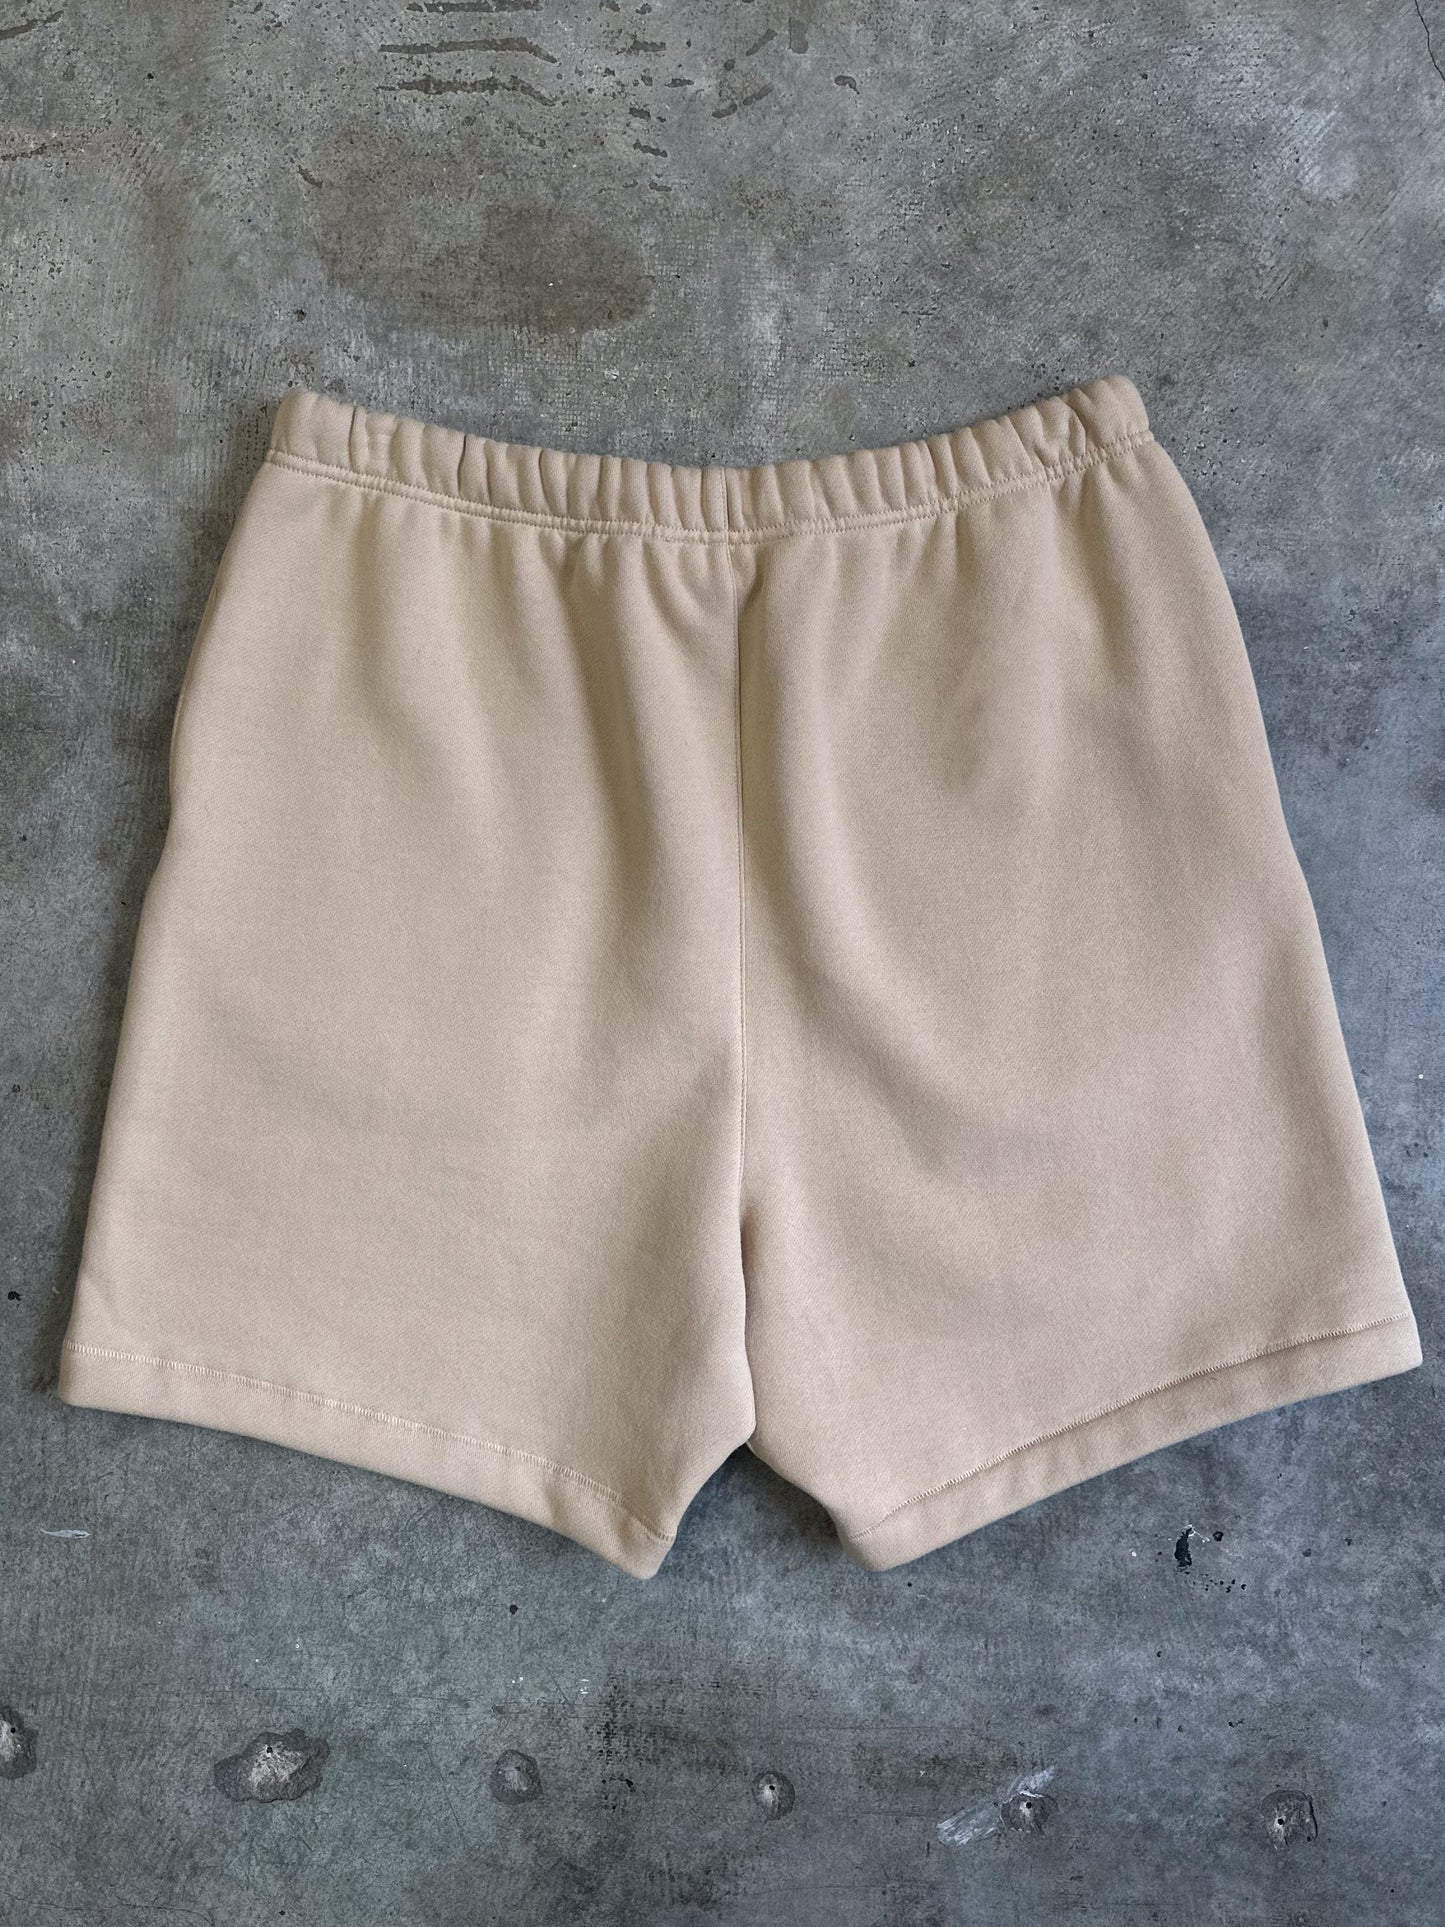 Essentials Cotton Shorts